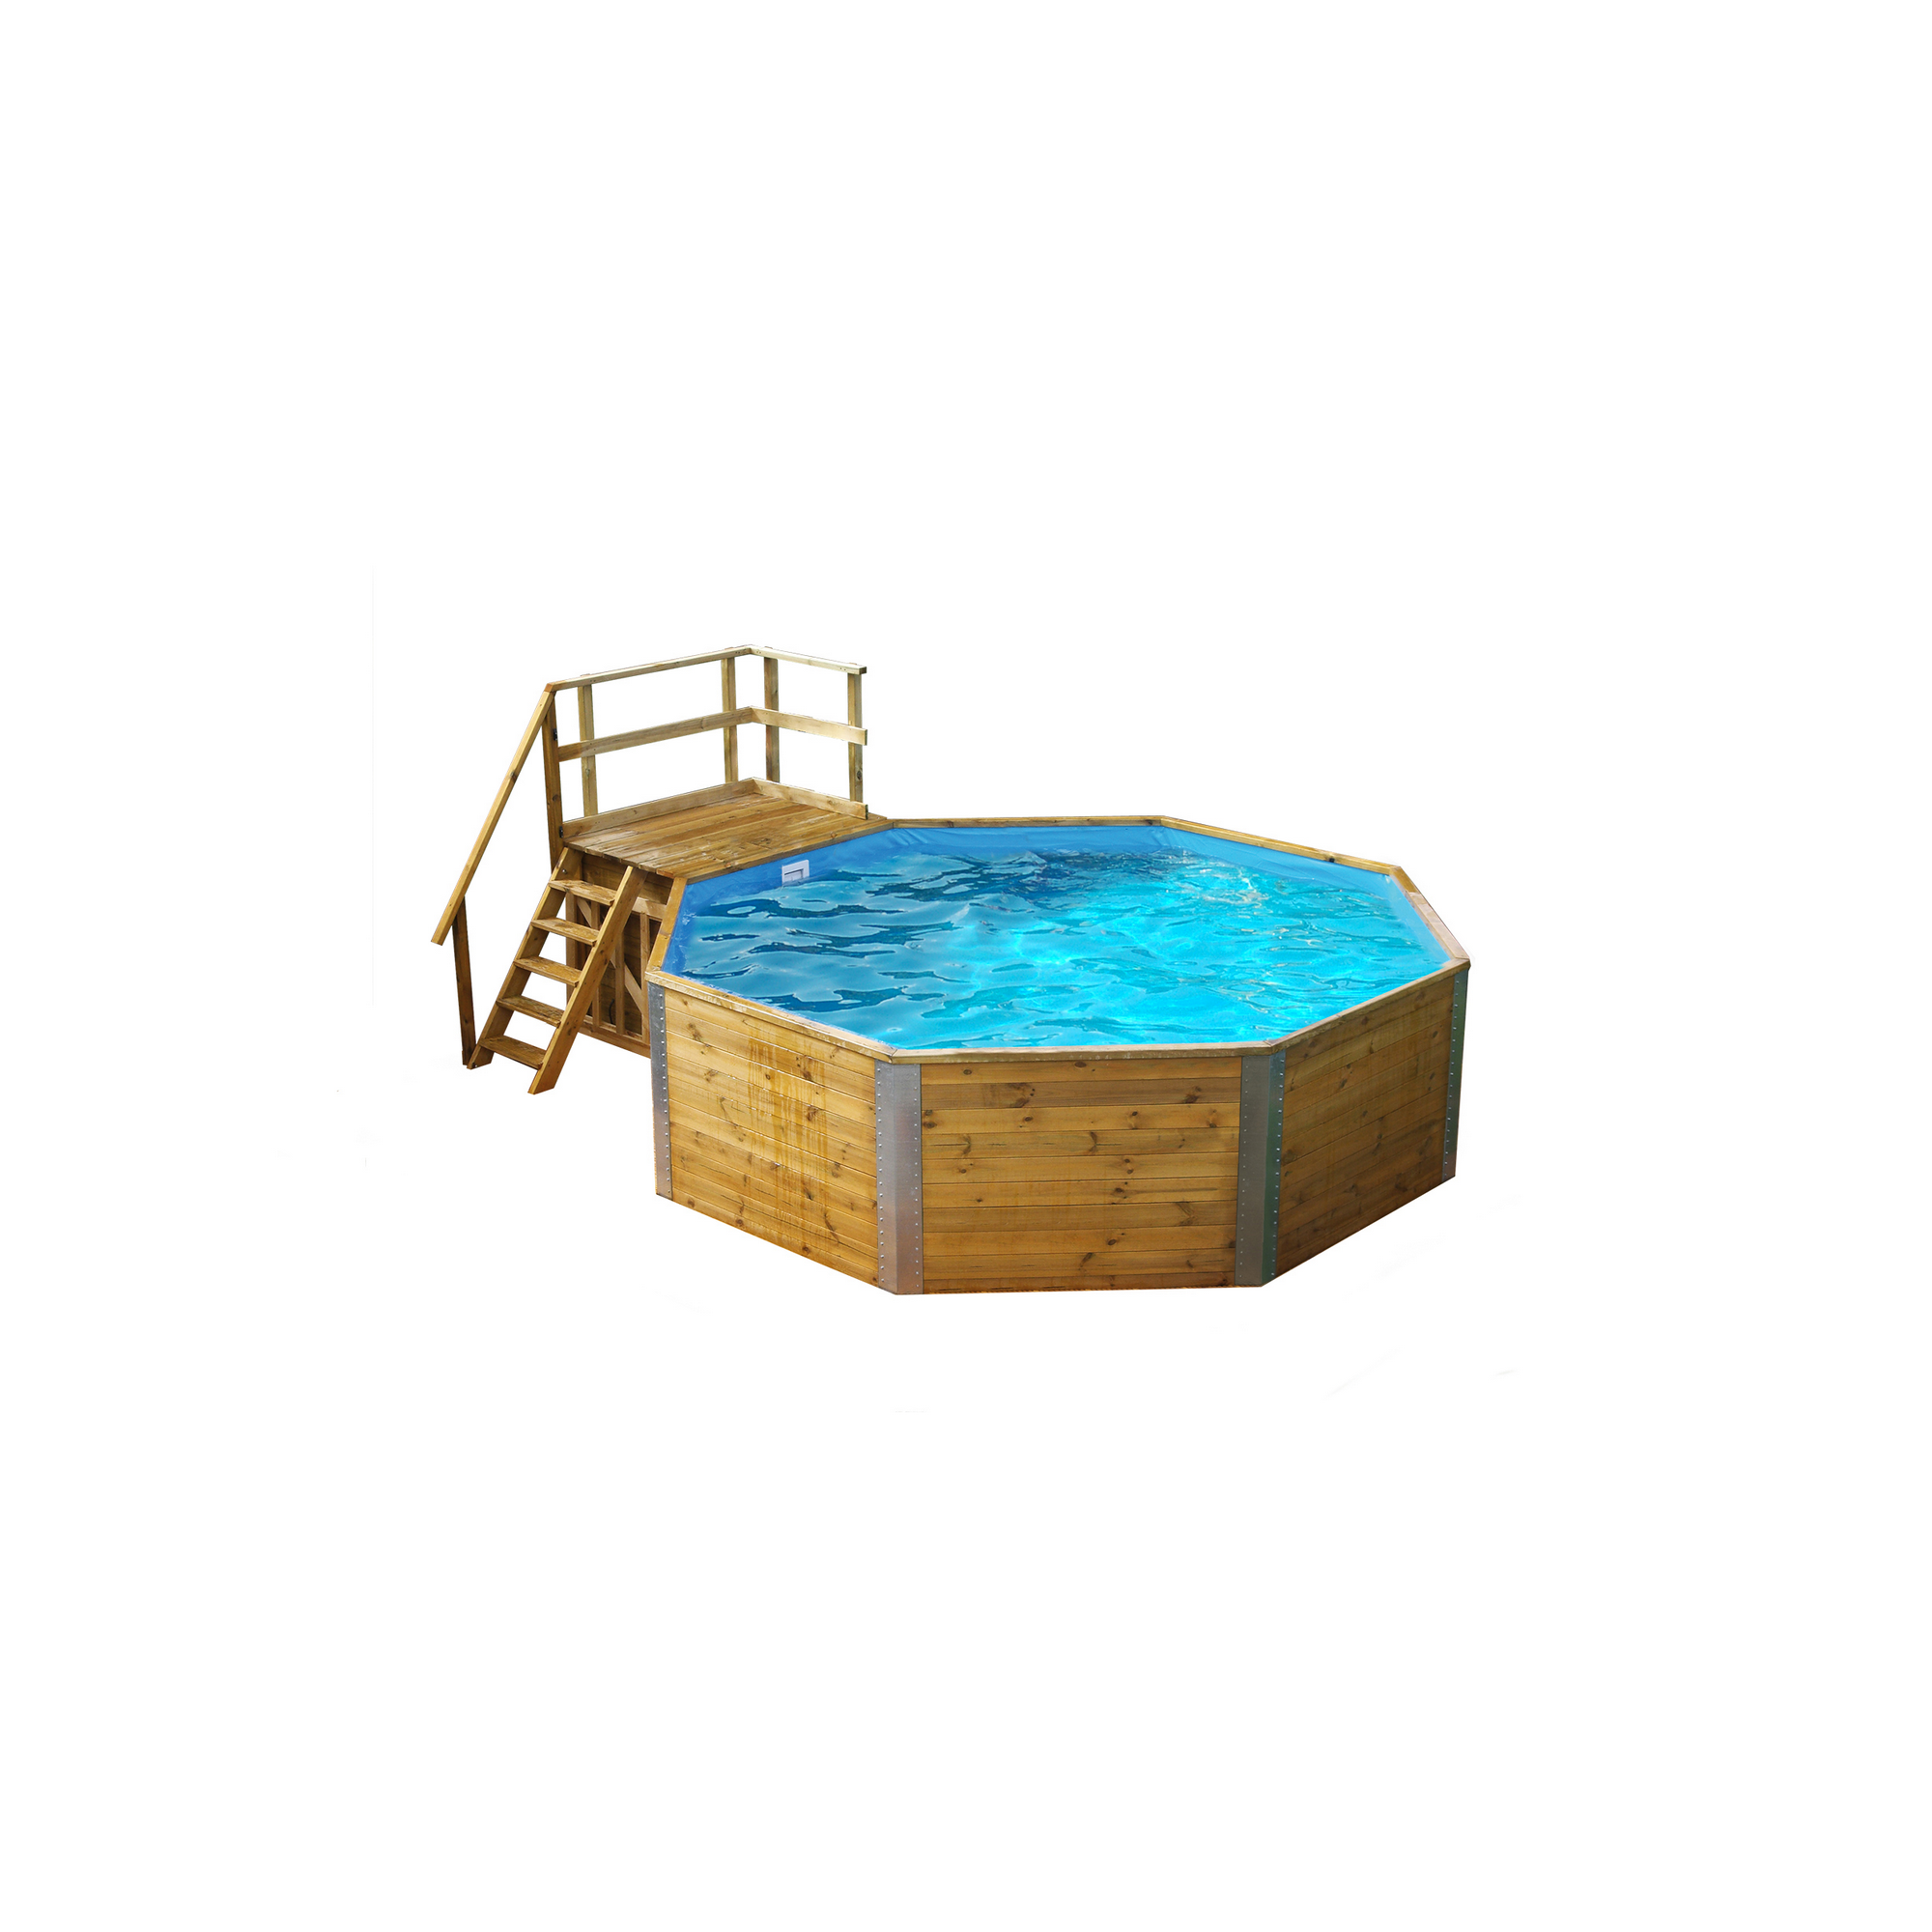 Massivholz-Pool '593 B Größe 1' achteckig, 376 x 376 x 116 cm, mit Technikraum und Sandfilteranlage + product picture